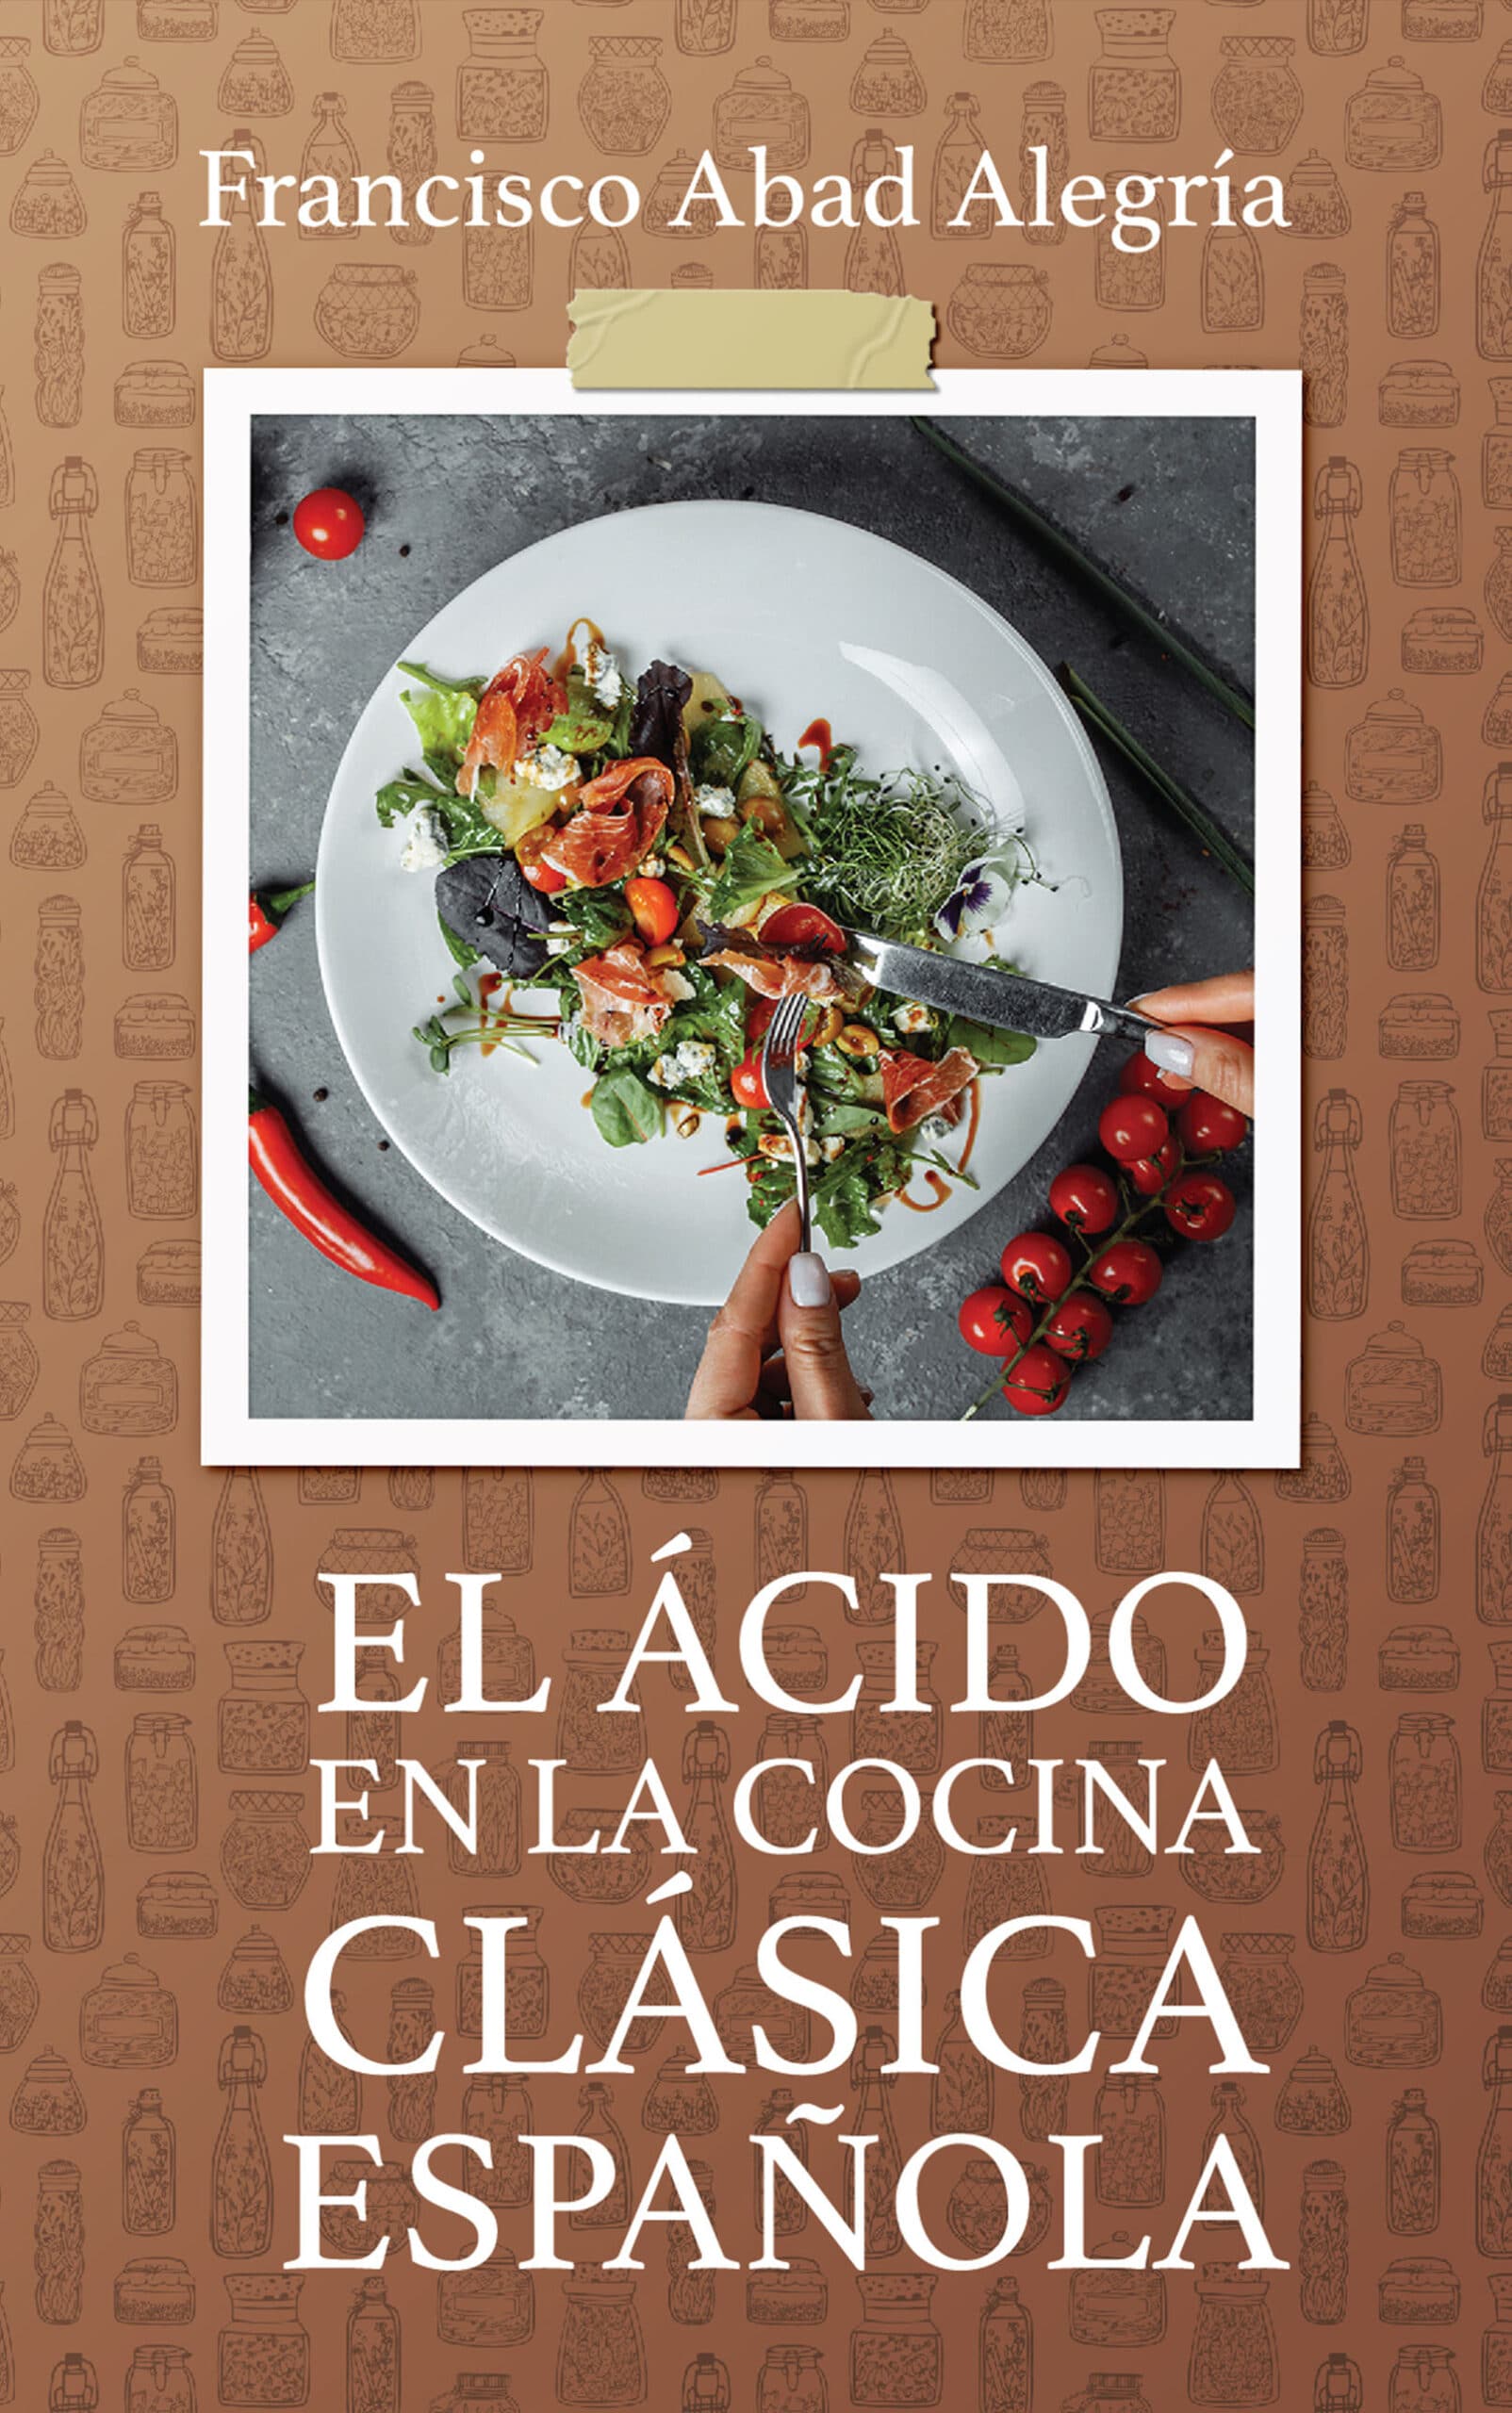 El ácido en la cocina española, de Francisco Abad Alegría